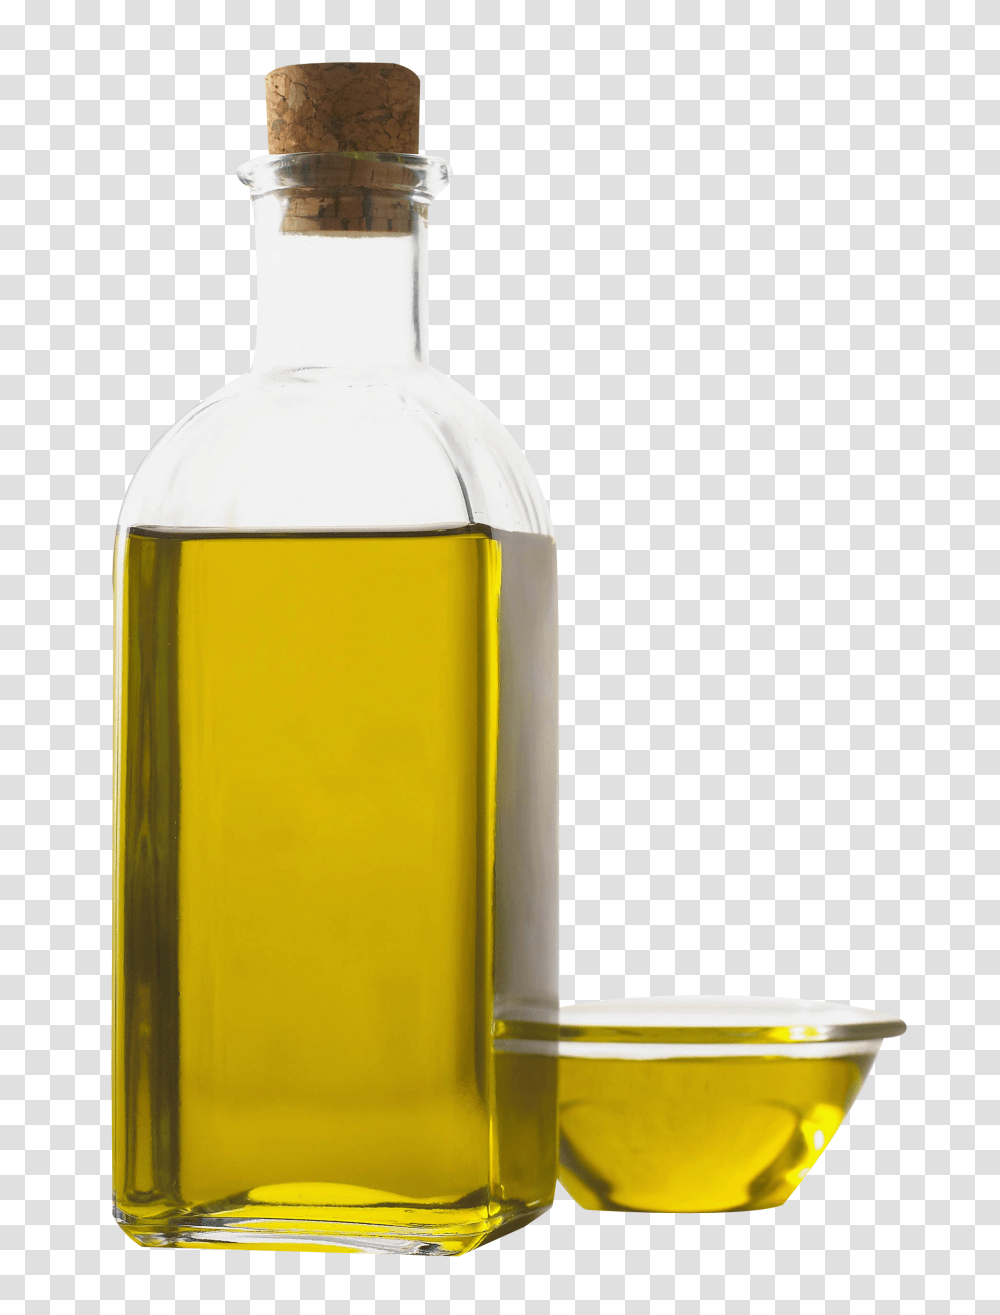 Olive Oil Bottle, Food, Glass, Liquor, Alcohol Transparent Png